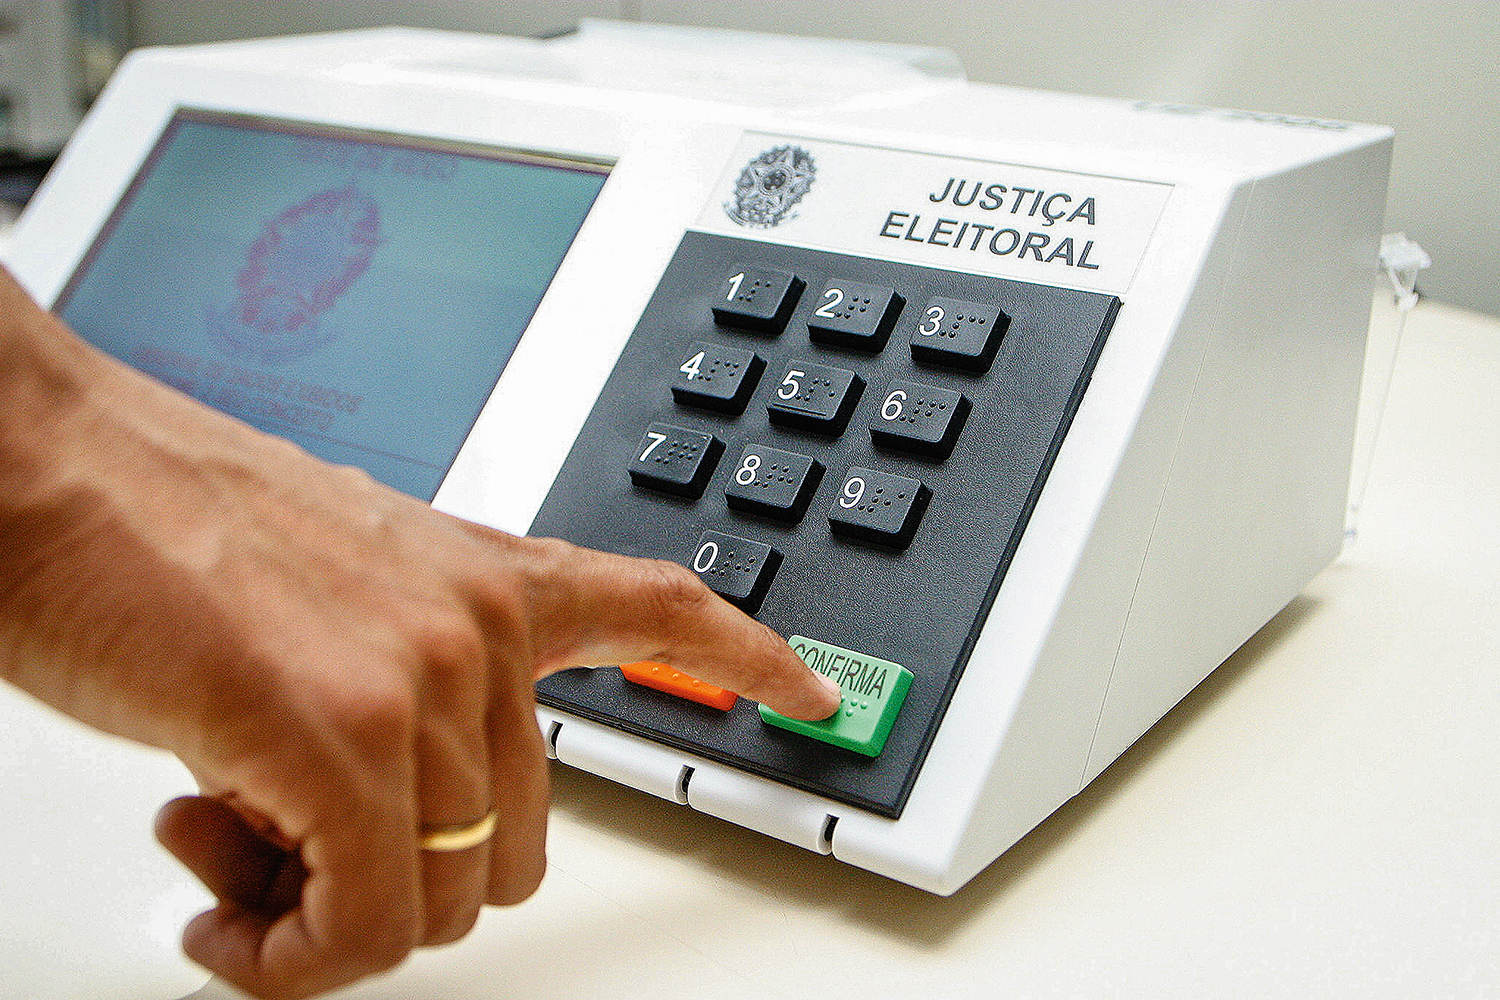 2.630 urnas eletrônicas foram substituídas no Brasil, aponta 3° boletim do TSE